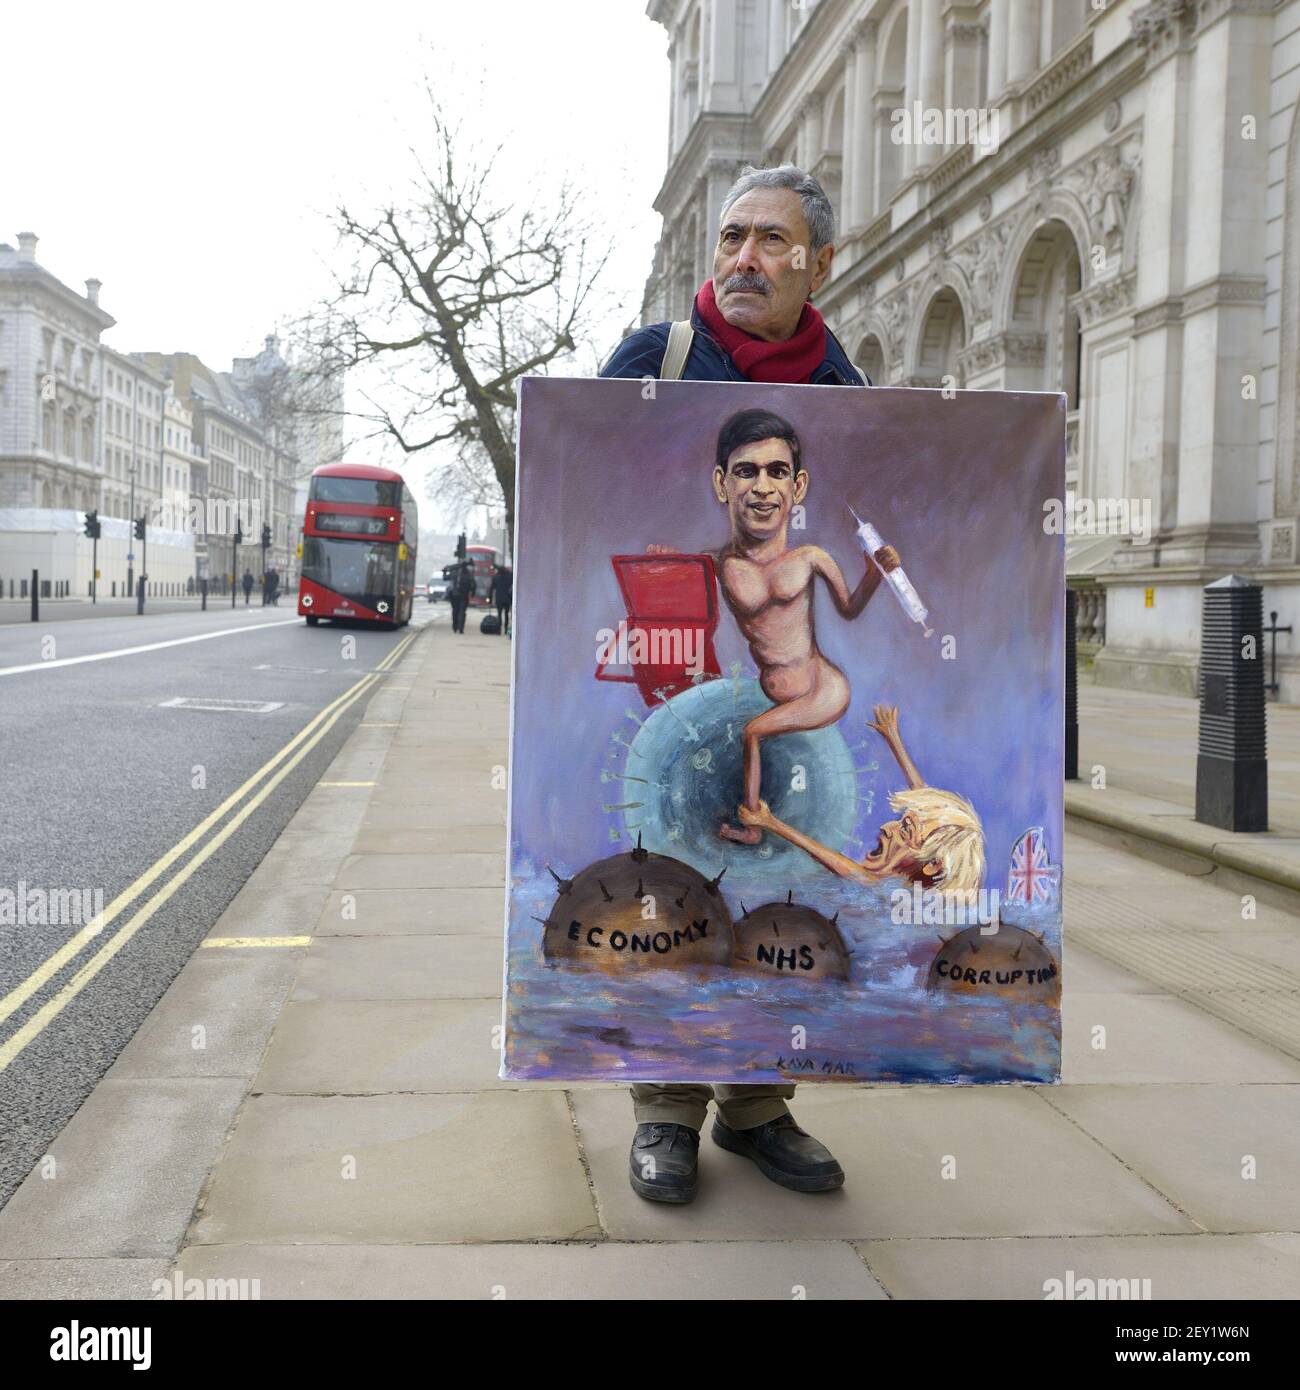 Kaya Mar - türkischer politischer Karikaturist - außerhalb der Downing Street mit seinem neuen Budget-Gemälde von Rishi Sunak, am Budget Day 3rd. März 2021 Stockfoto